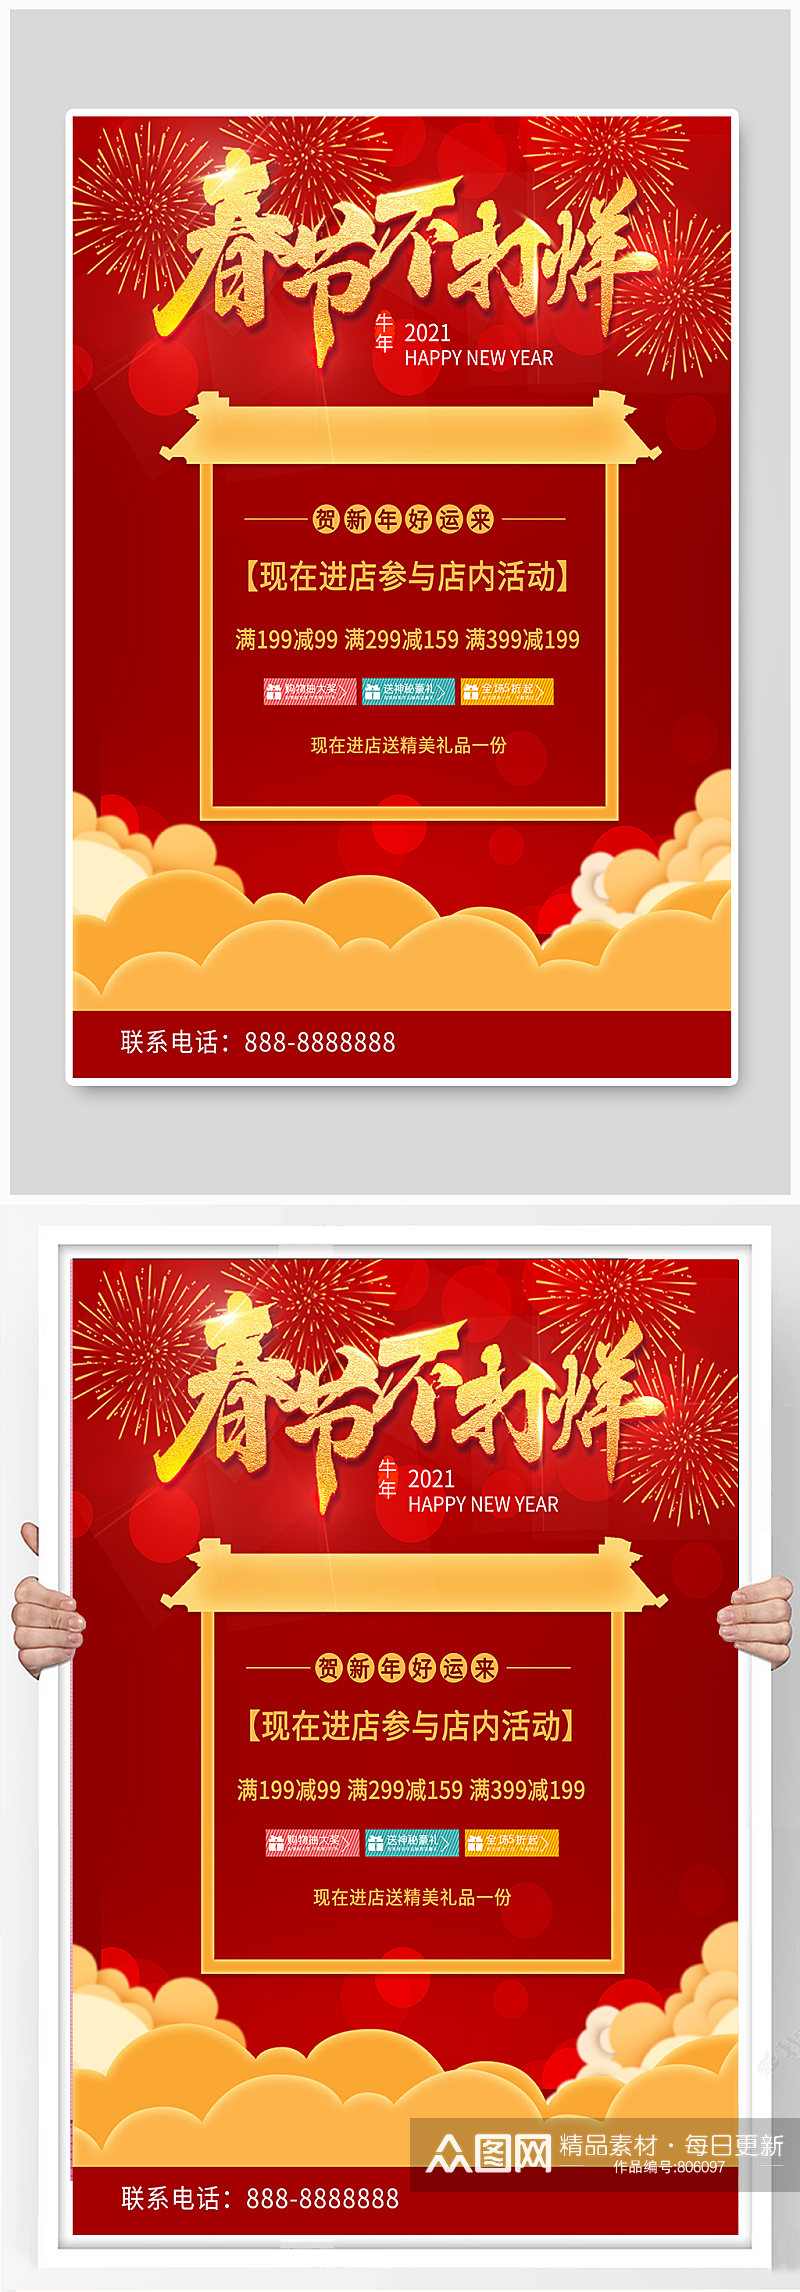 红色喜庆春节不打烊优惠活动海报宣传单页素材